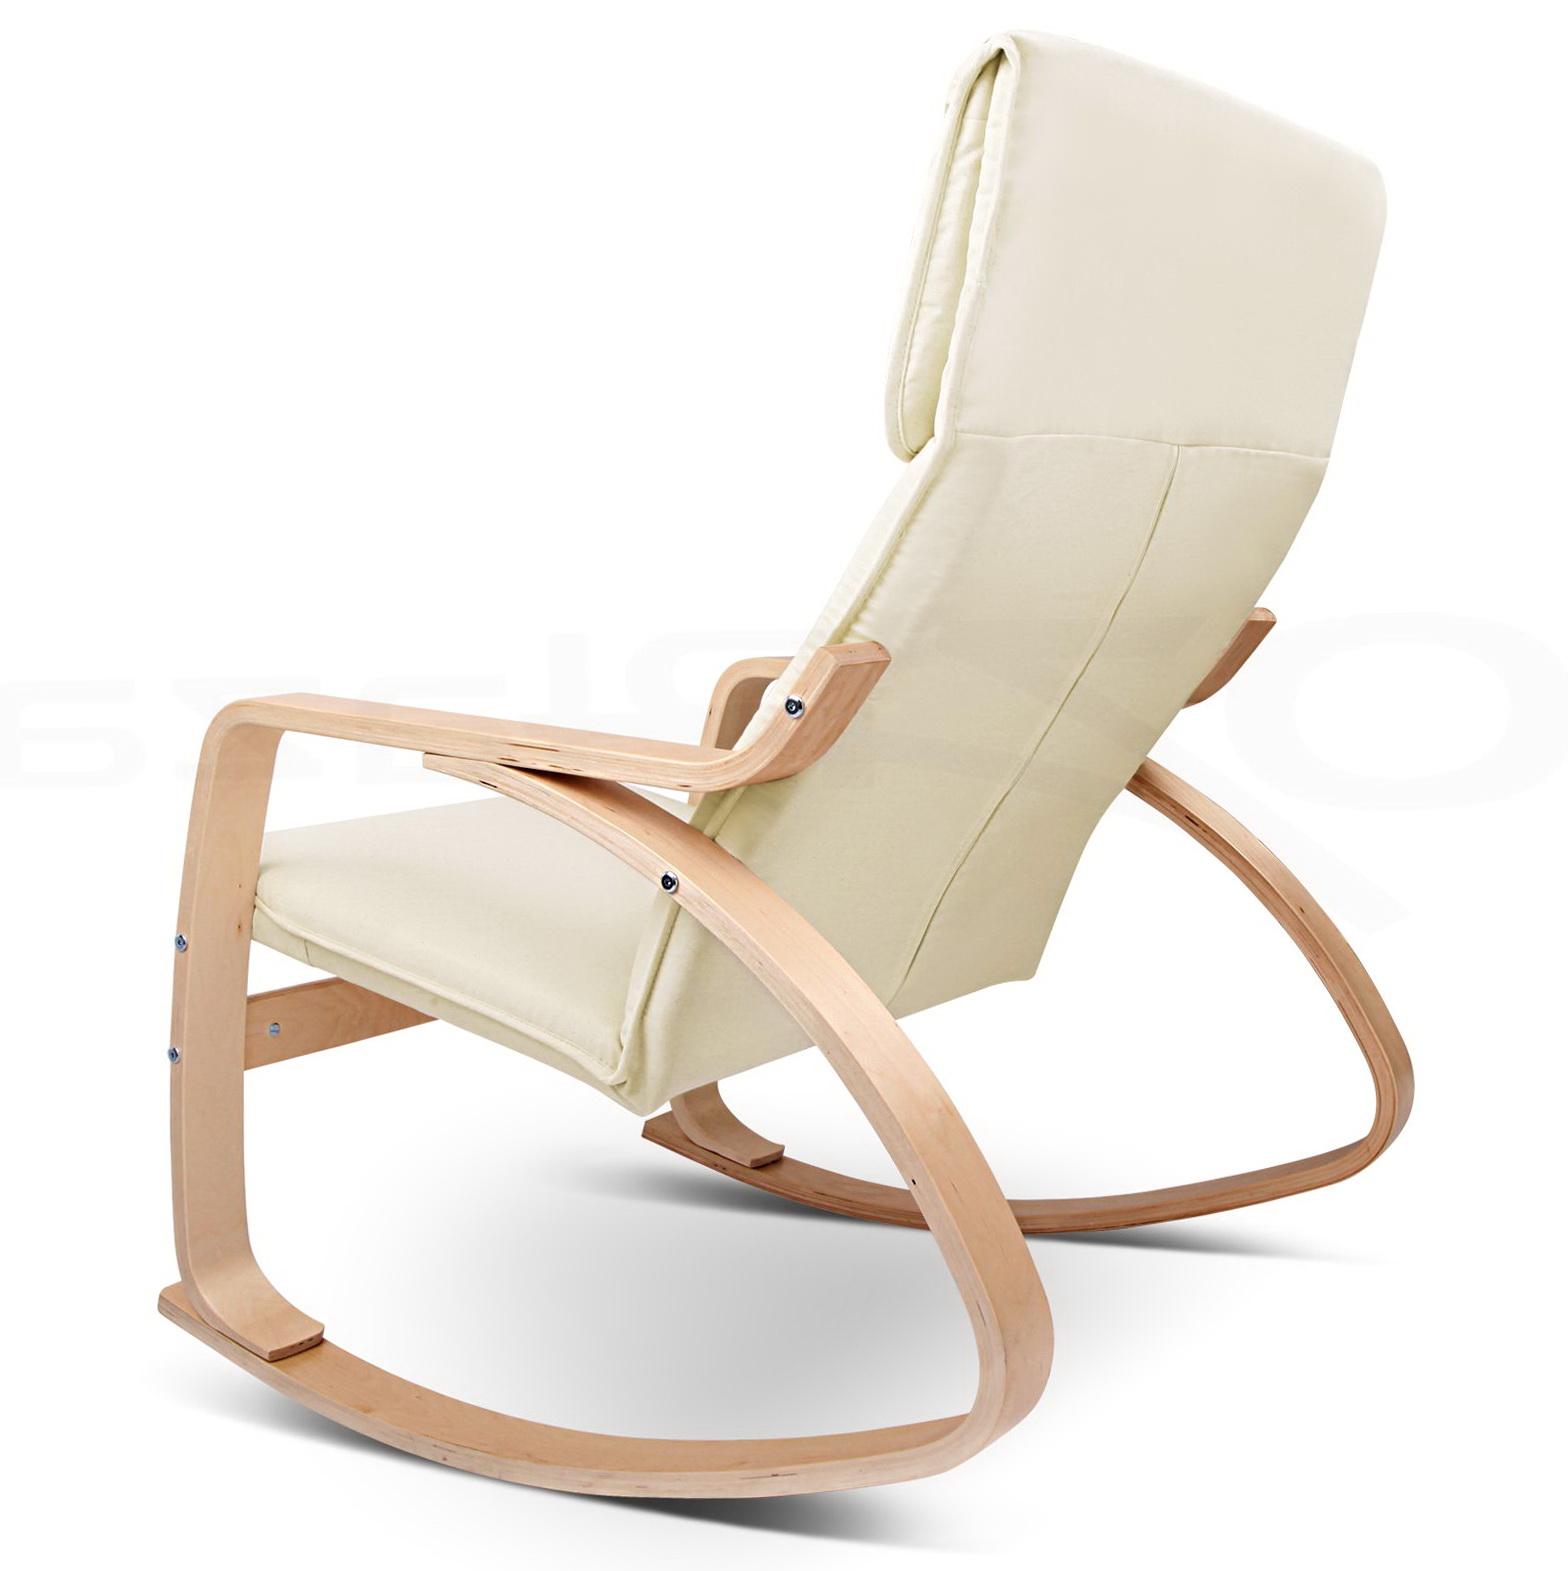 Rocking Chair Cushions Australia | Home Design Ideas